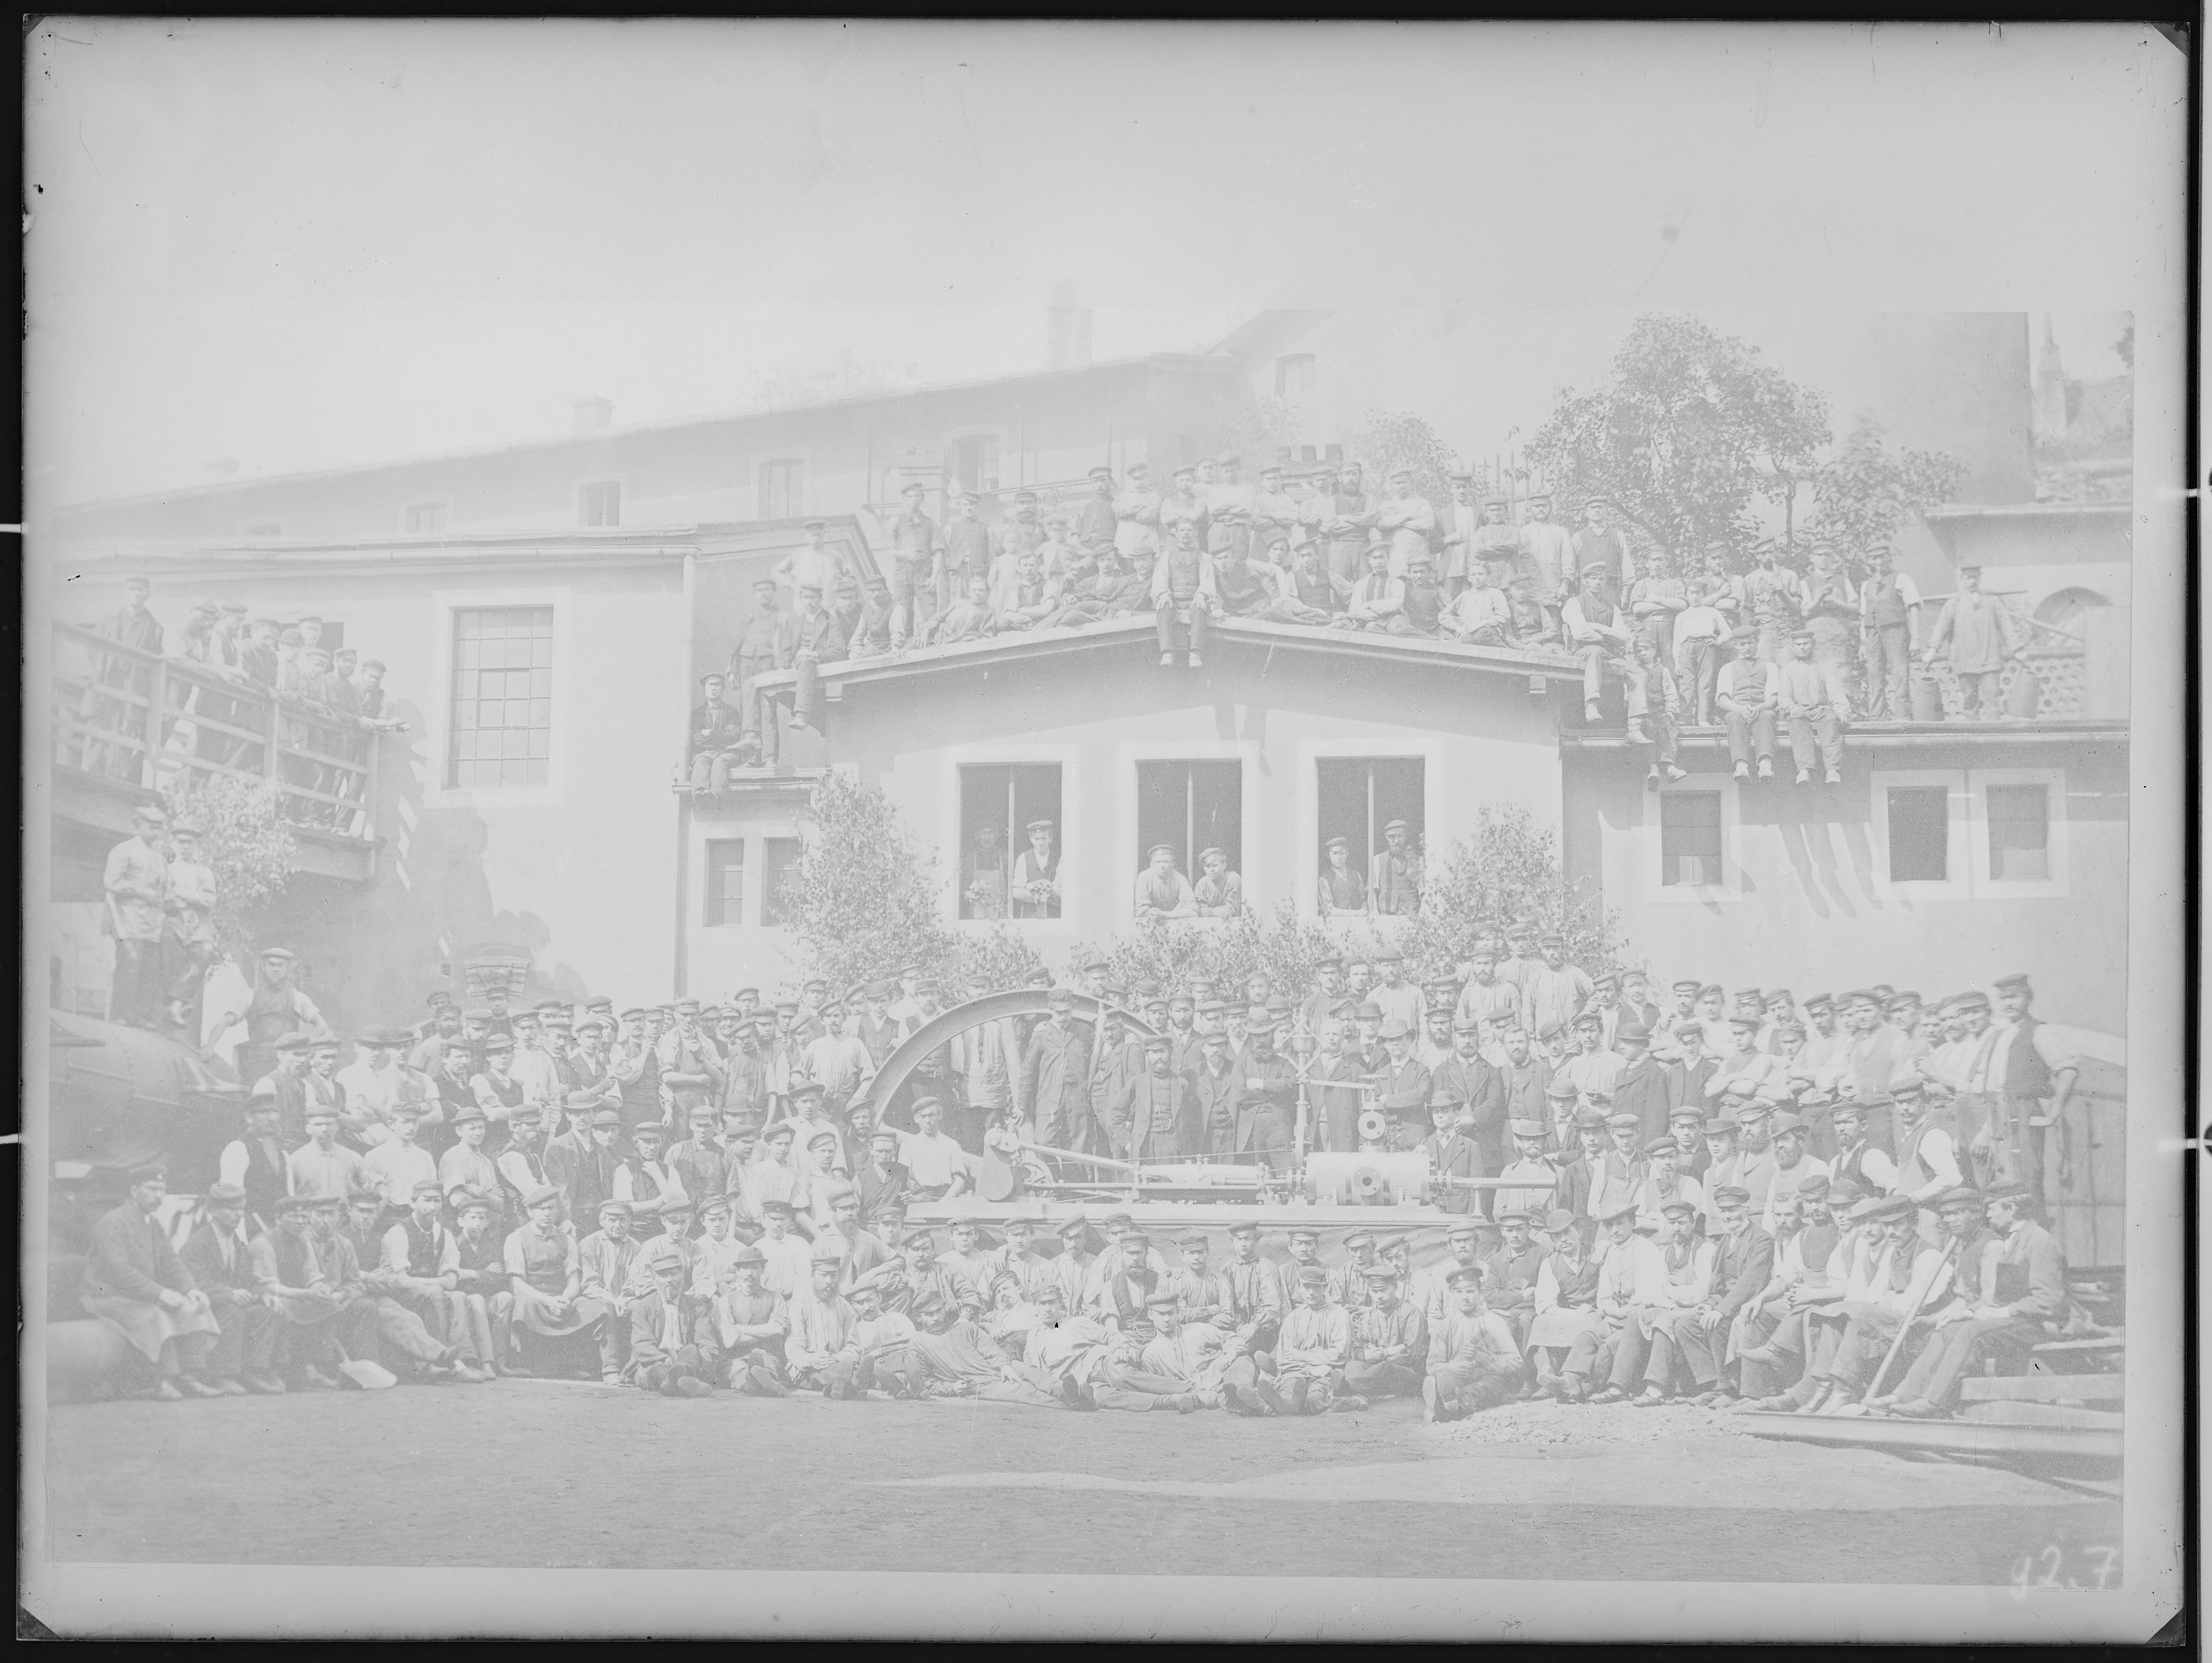 Fotografie: Gruppenporträt von Werksangehörigen der AG für Fabrikation von Eisenbahn-Material zu Görlitz, um 1905. (Verkehrsmuseum Dresden CC BY-NC-SA)